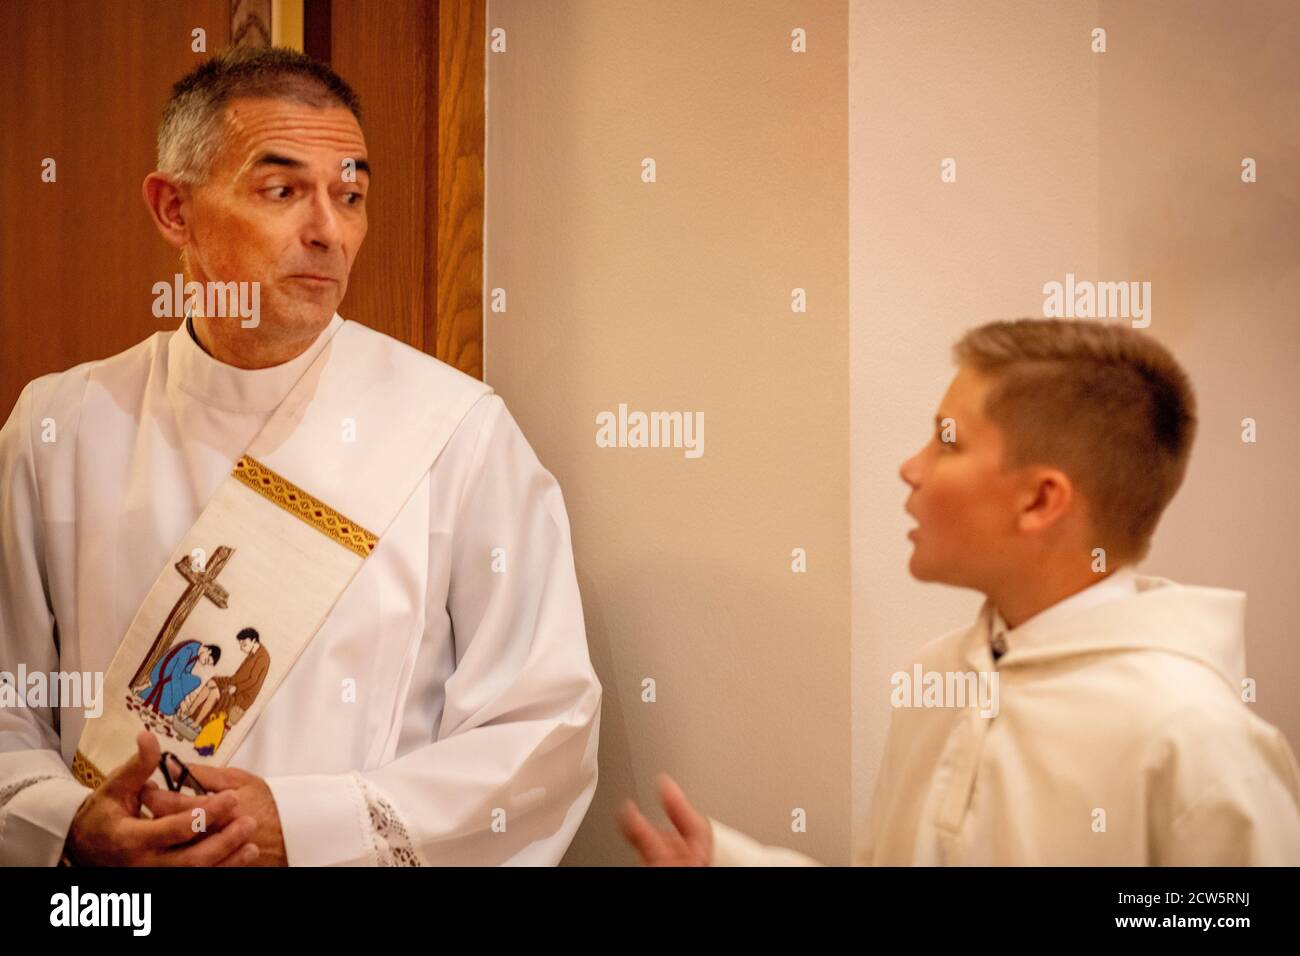 Dans une église catholique du sud de la Californie, un diacre rodé avec une photo de sash converse avec un assistant d'autel de jeune garçon avant la messe. Banque D'Images